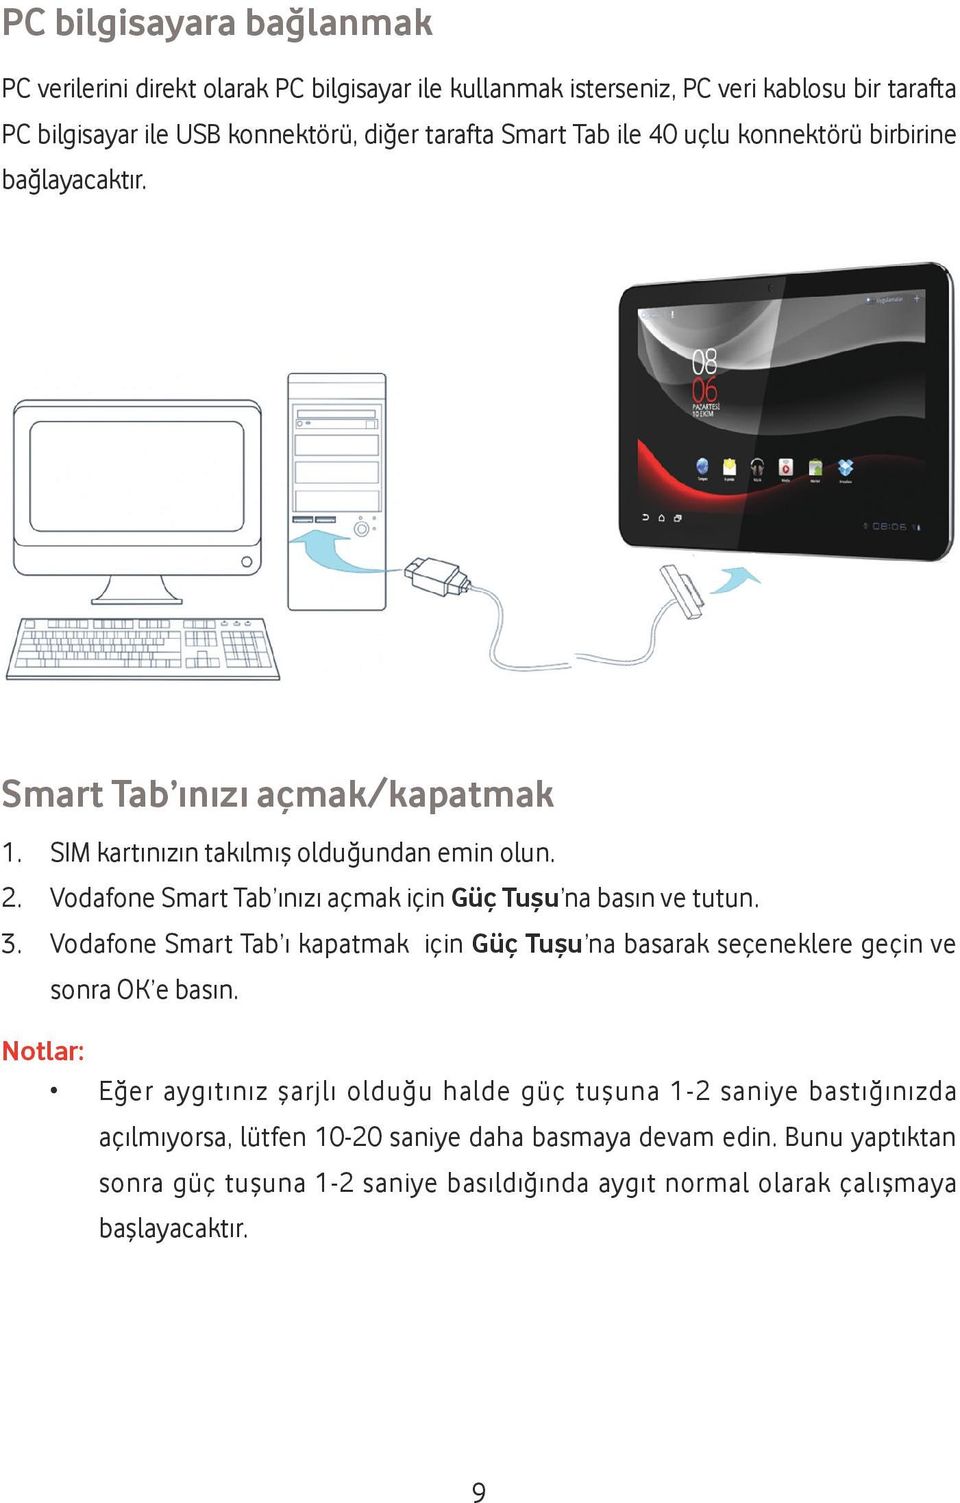 Vodafone Smart Tab ınızı açmak için Güç Tuşu na basın ve tutun. 3. Vodafone Smart Tab ı kapatmak için Güç Tuşu na basarak seçeneklere geçin ve sonra OK e basın.